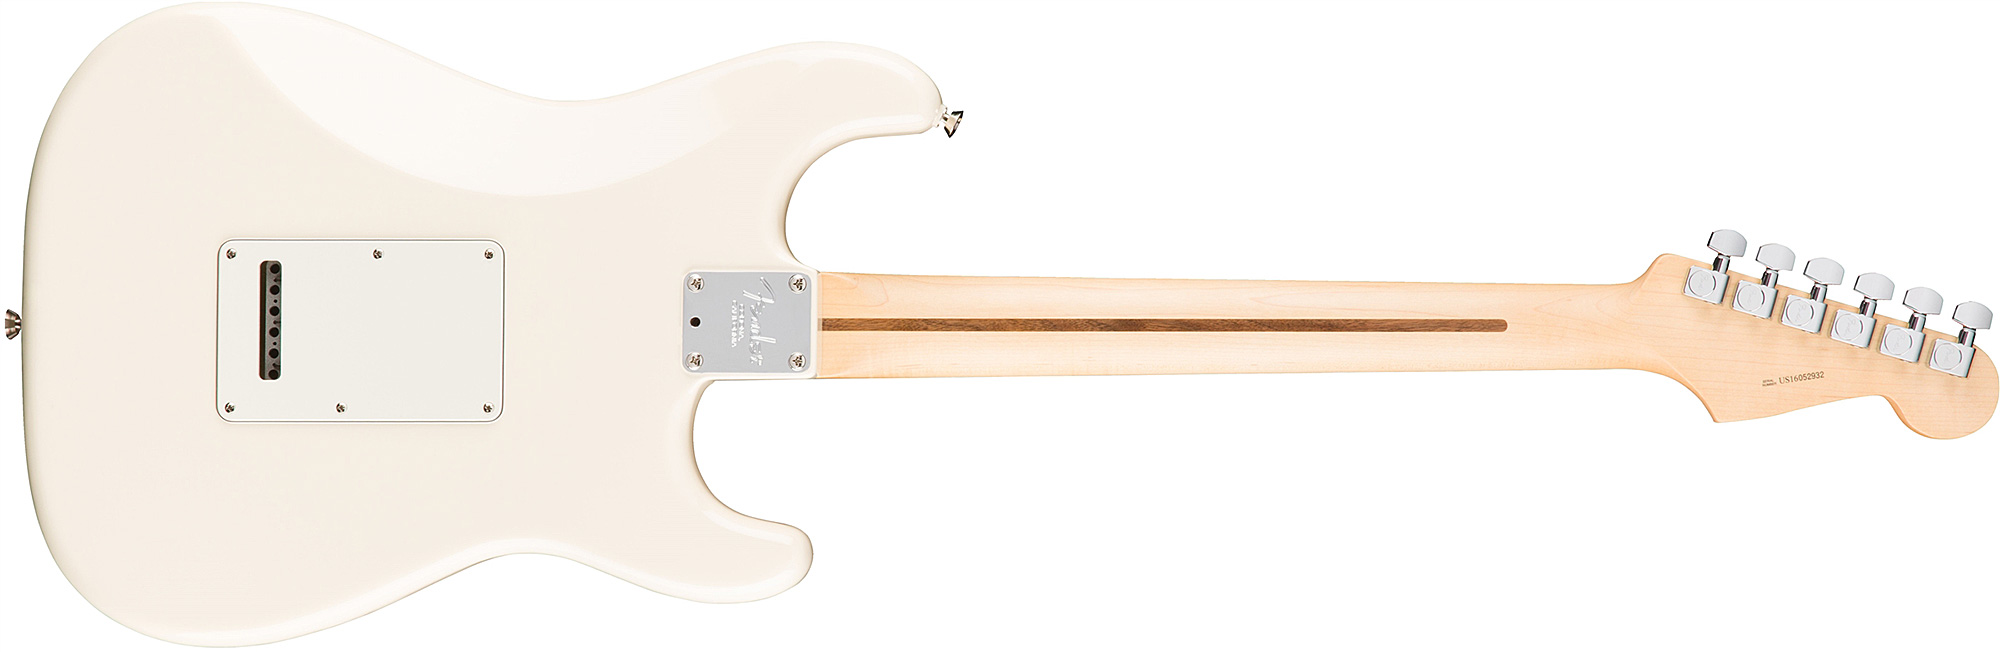 Fender Strat American Professional Lh Usa Gaucher 3s Rw - Olympic White - E-Gitarre für Linkshänder - Variation 1